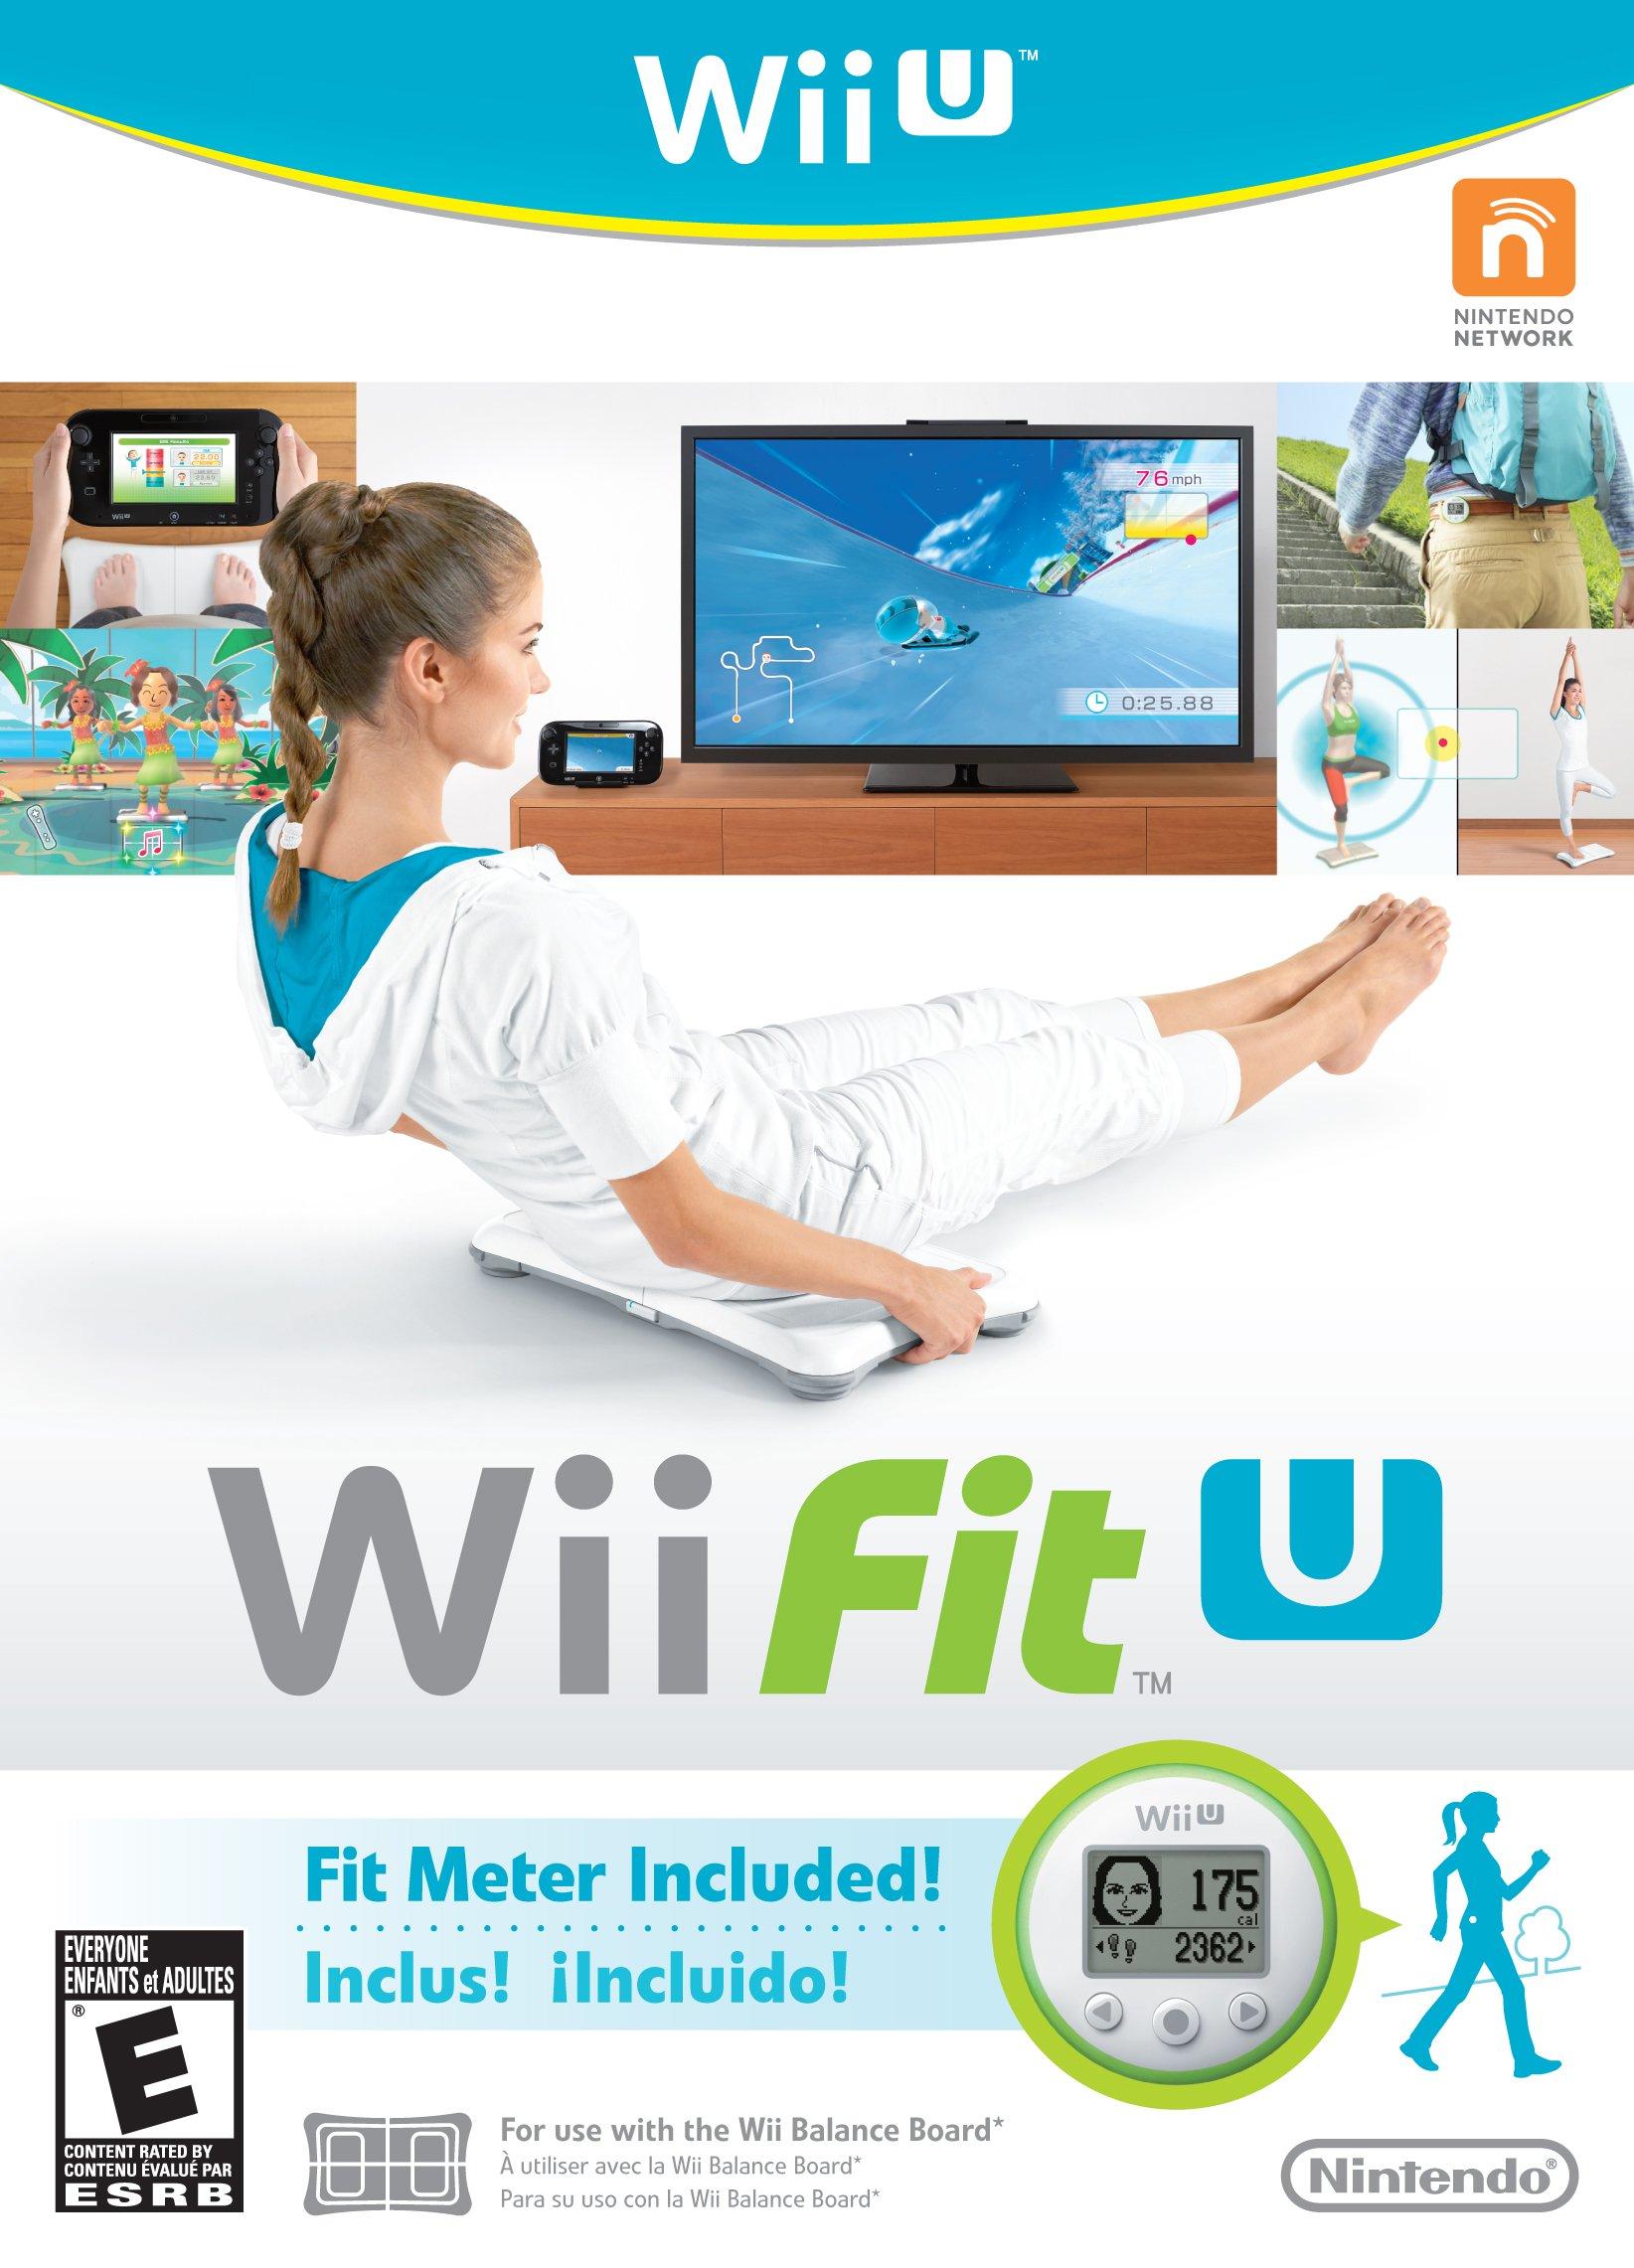 Adelantar implícito toda la vida Wii Fit U - Wii U | Nintendo Wii U | GameStop